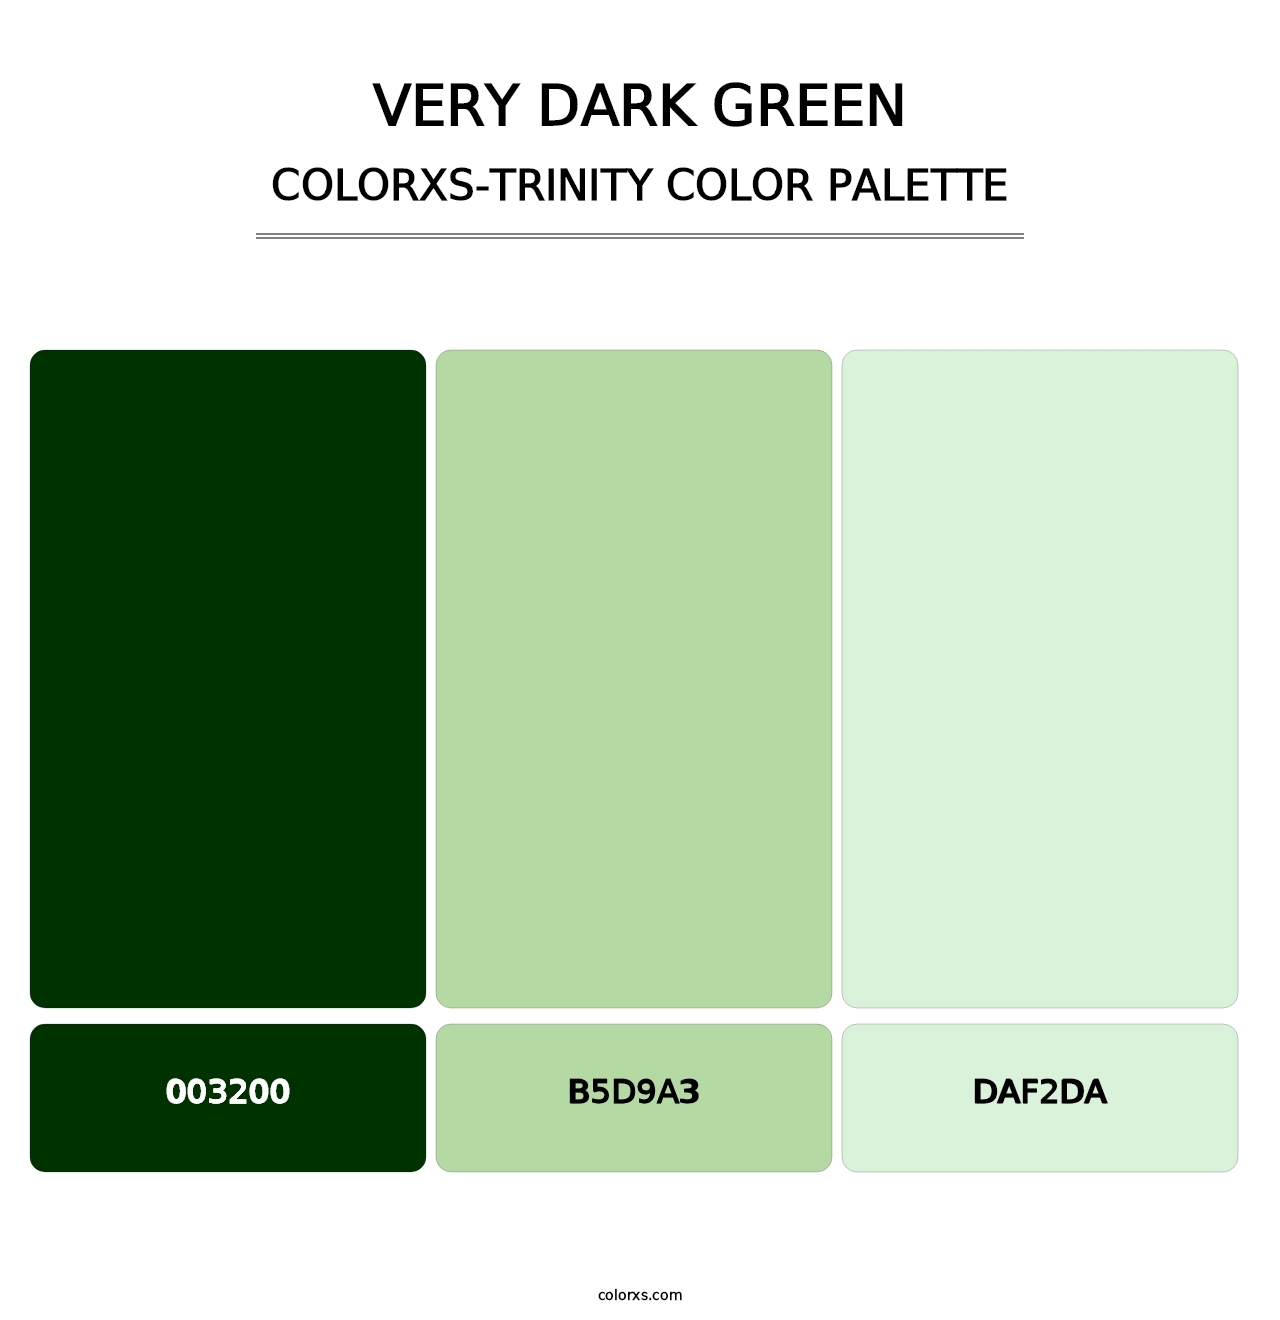 Very Dark Green - Colorxs Trinity Palette